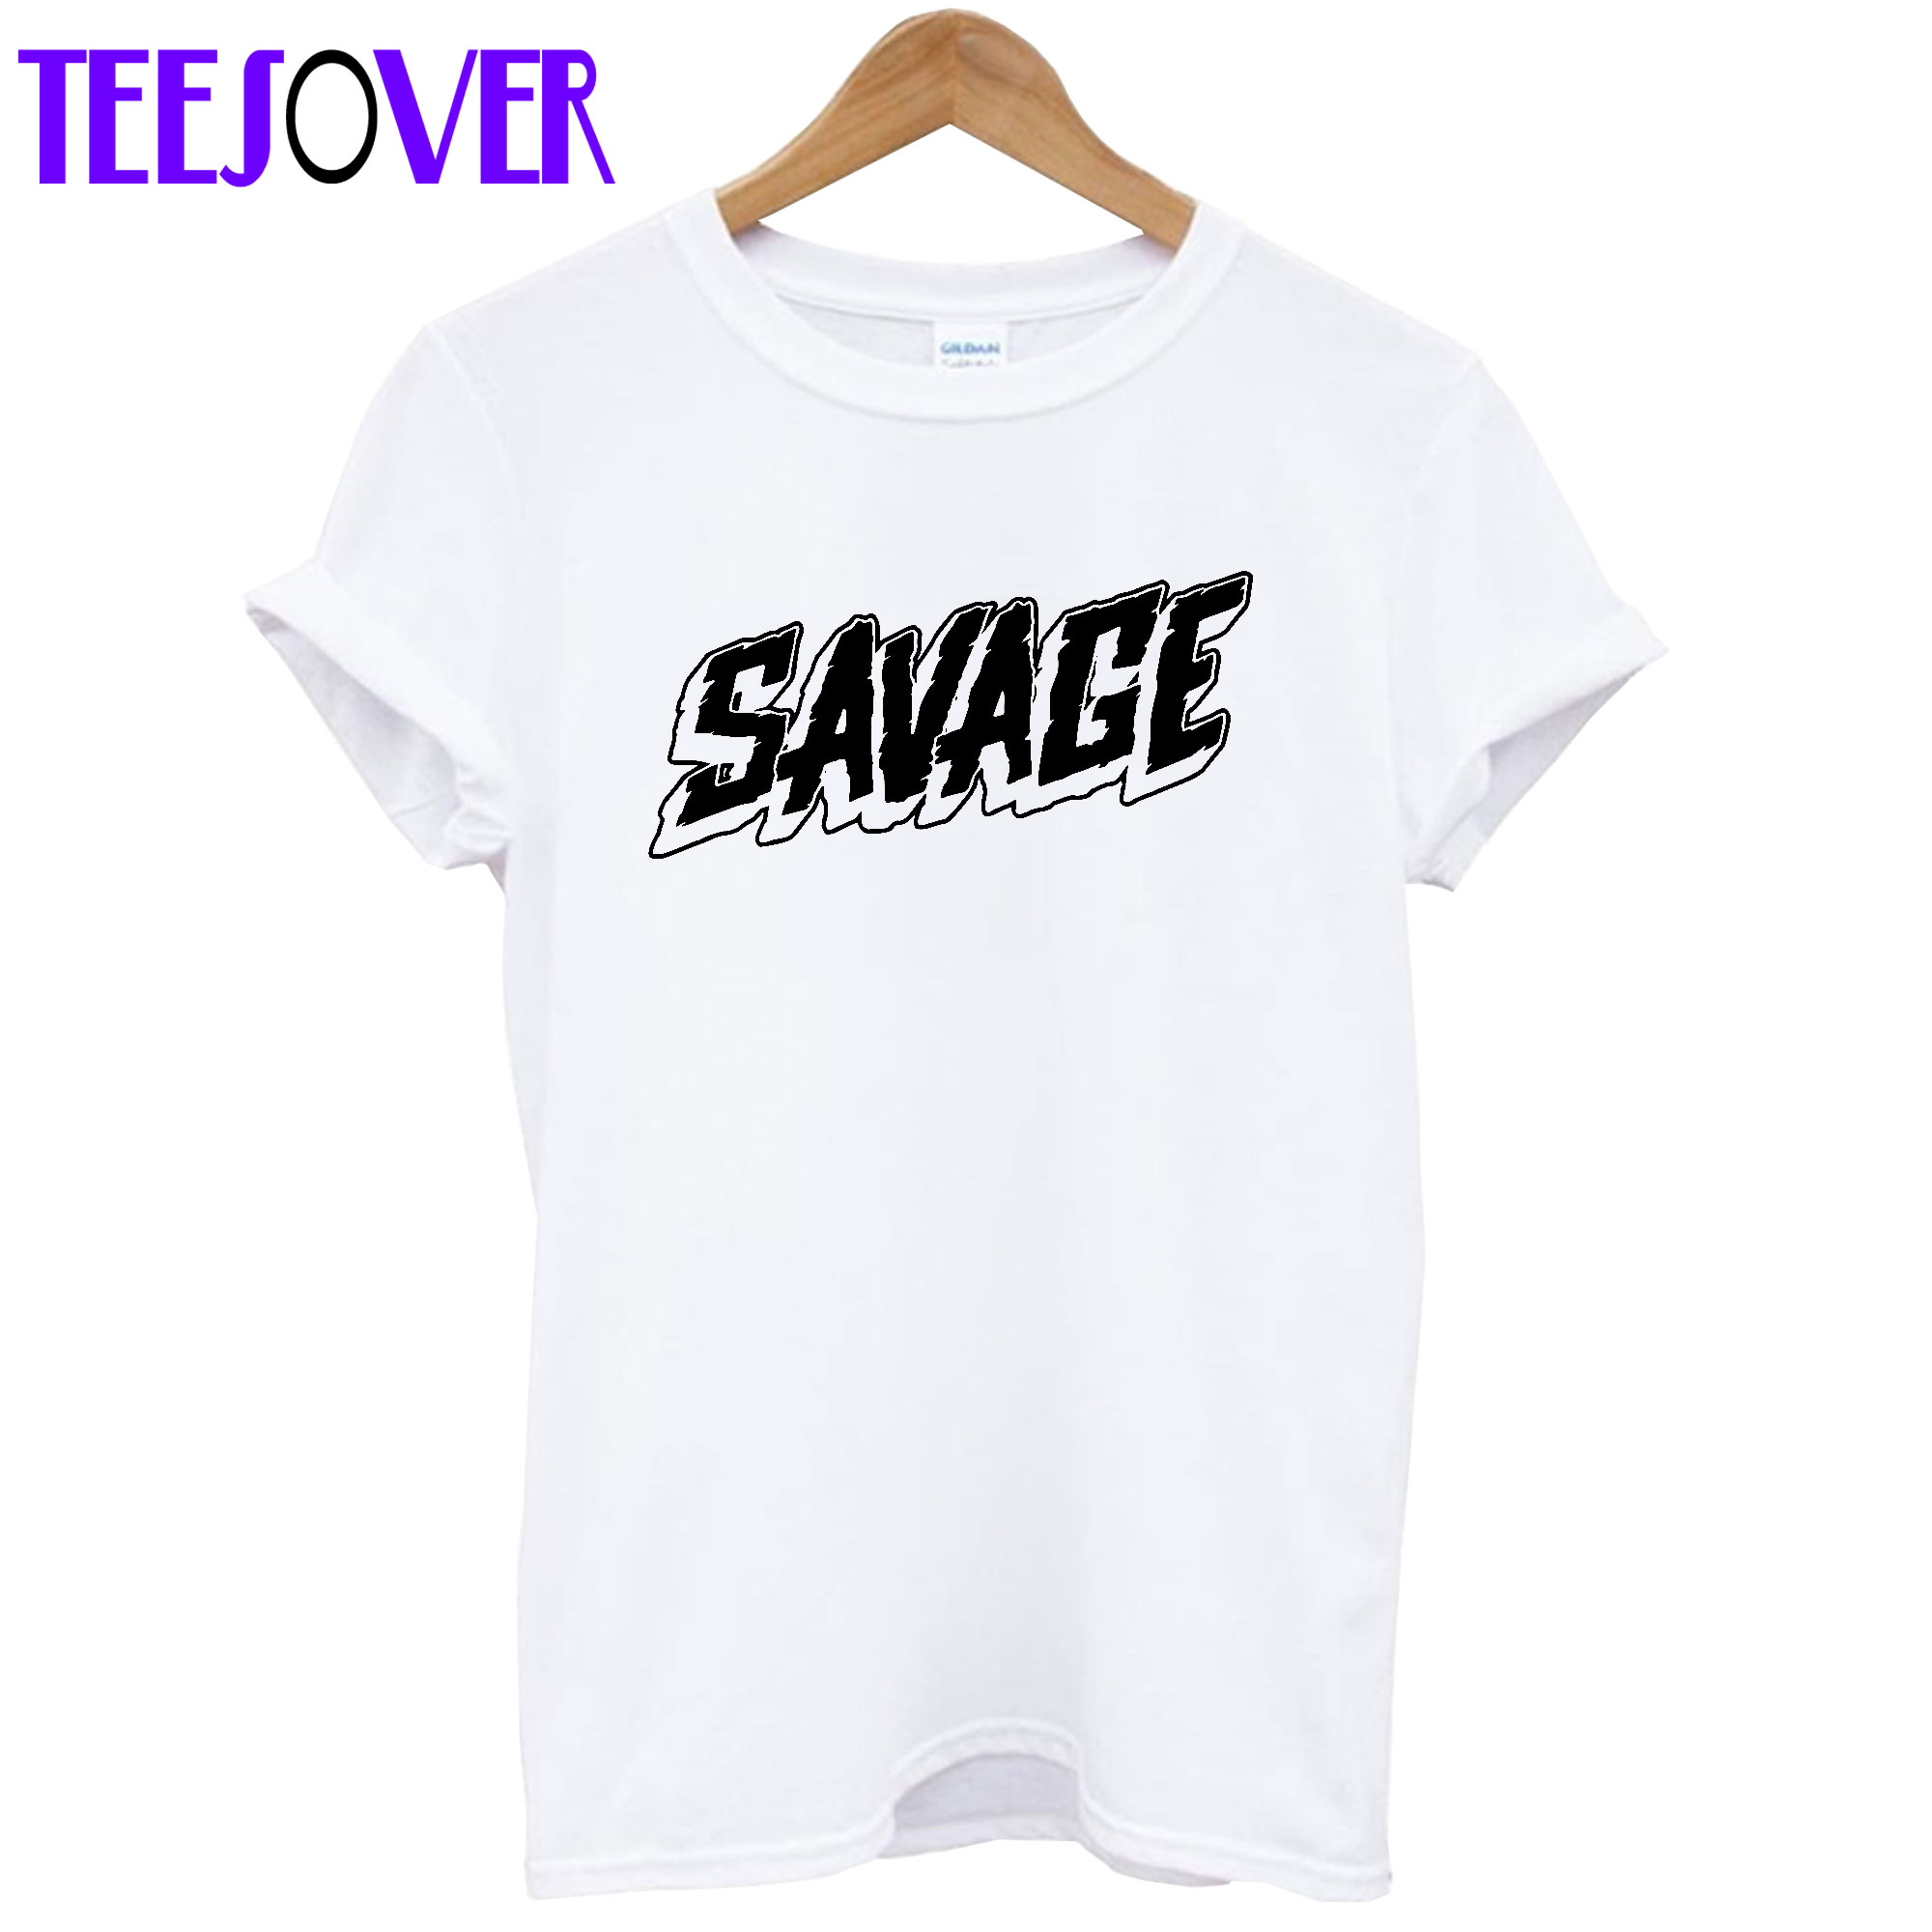 Savage T Shirt